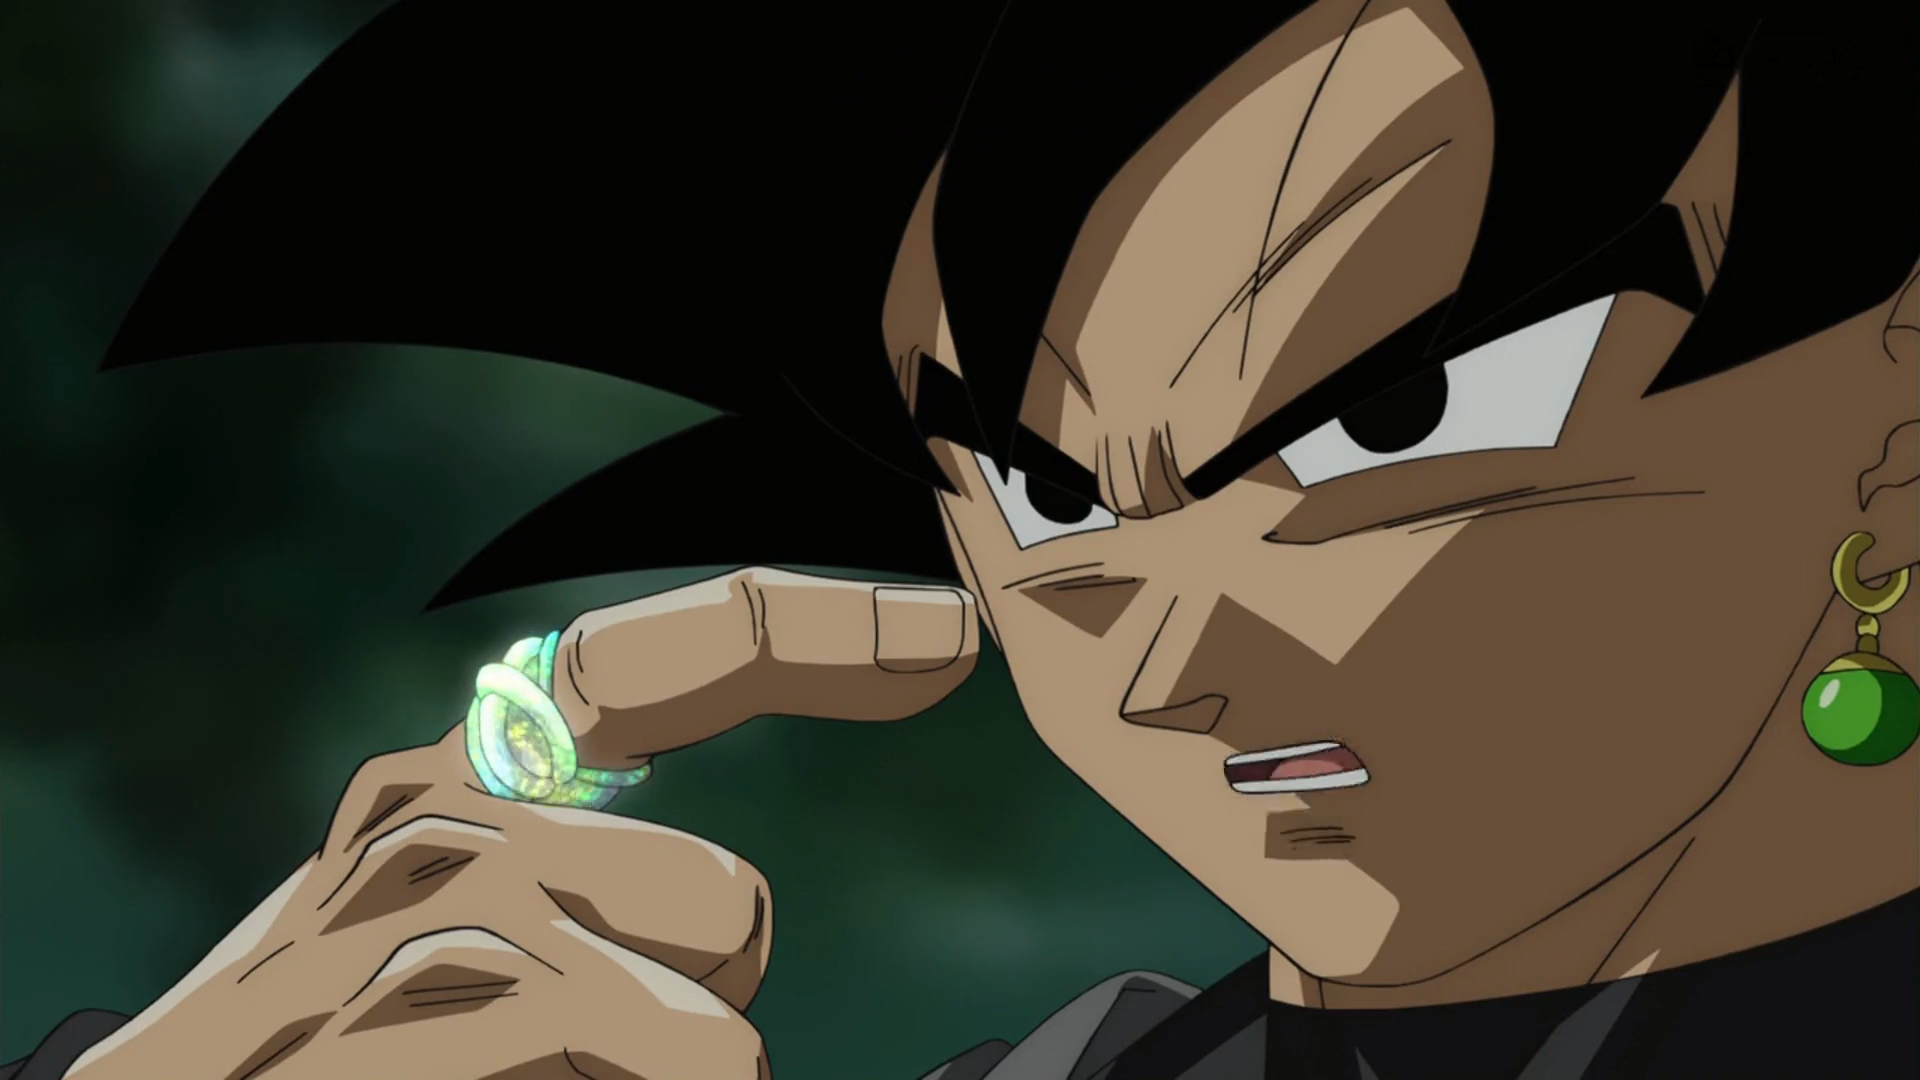 Black Goku - Sức mạnh - Wiki: Hãy khám phá sức mạnh đáng kinh ngạc của Black Goku thông qua bài viết chi tiết trên Wiki. Hình ảnh được thể hiện qua hình minh họa hoàn hảo sẽ cho bạn cảm giác như đang tham gia vào cuộc chiến đấu của nhân vật. Đừng bỏ lỡ cơ hội tìm hiểu về Black Goku và những khả năng đặc biệt của anh ta!